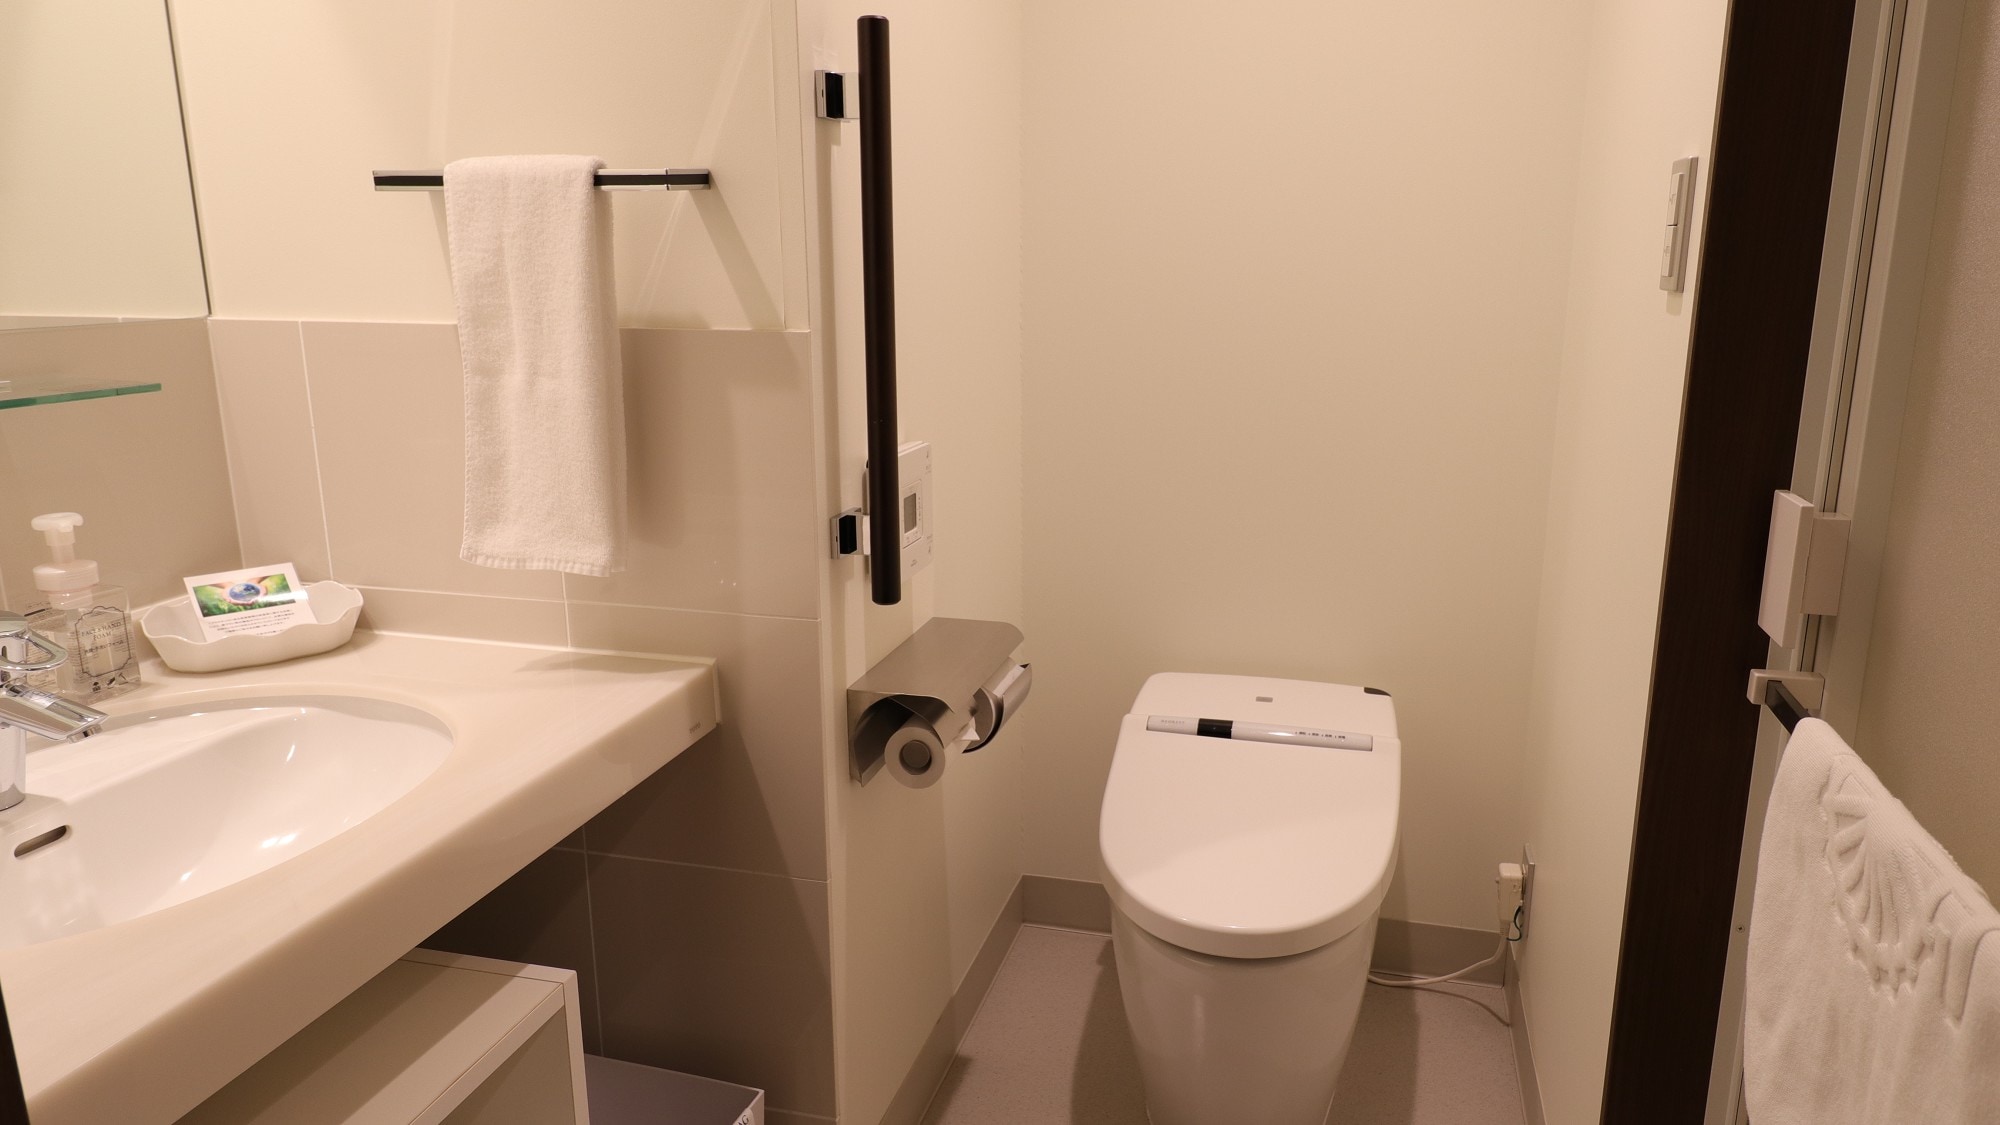 【雙人間】21平方米/床尺寸160cm×203cm 浴室、廁所、洗手間3分獨立型